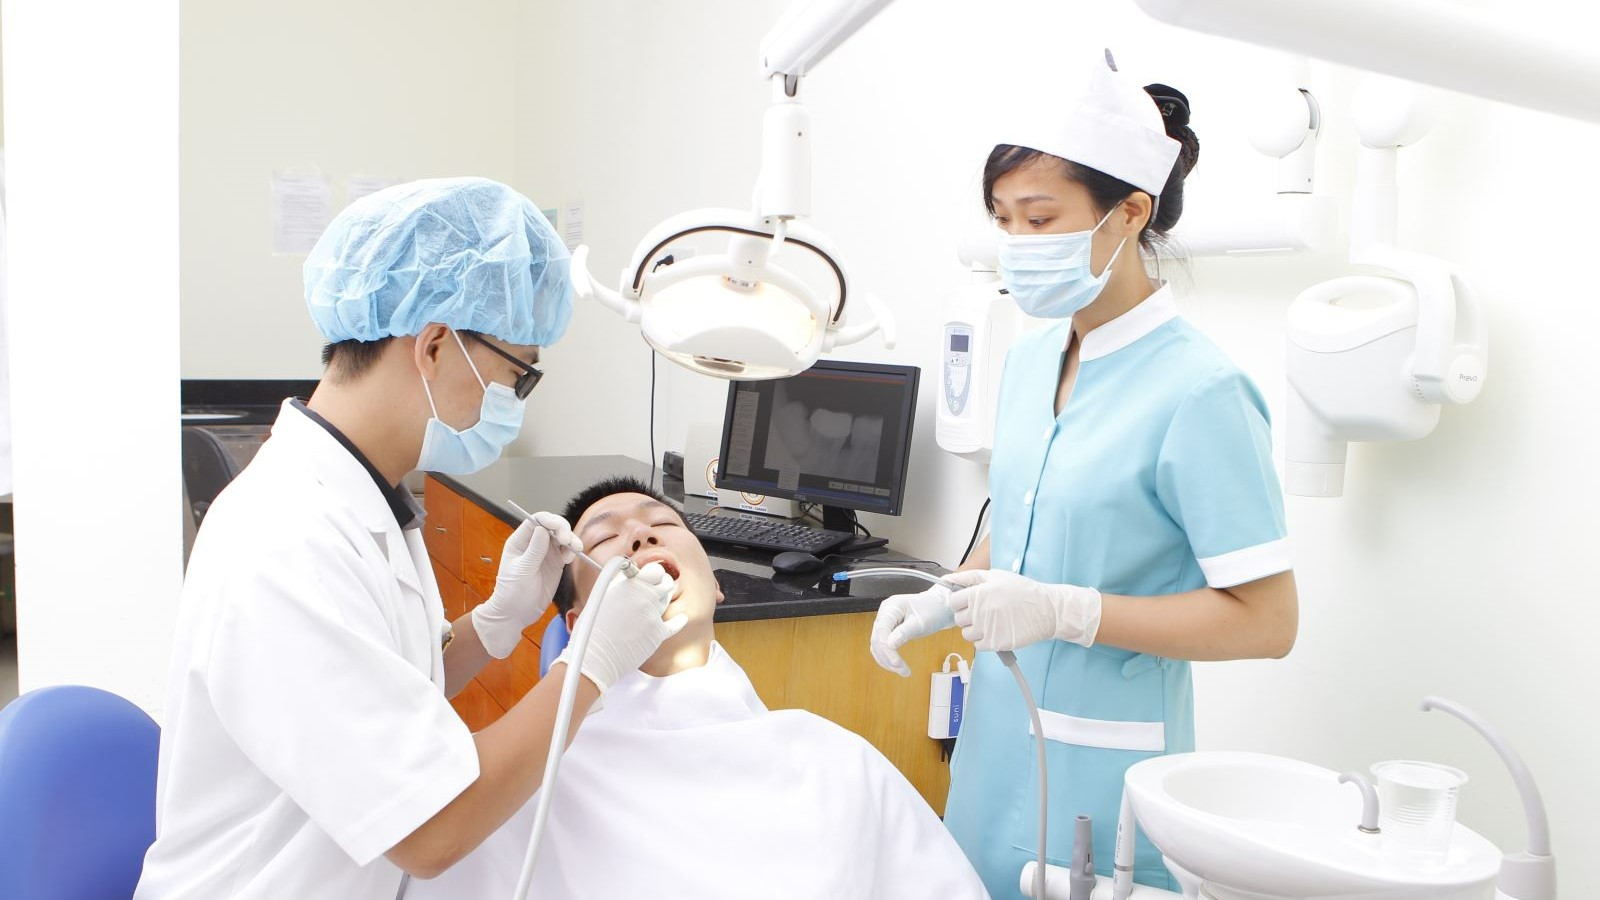 Phương pháp nhổ răng số 8 nào được sử dụng phổ biến?
